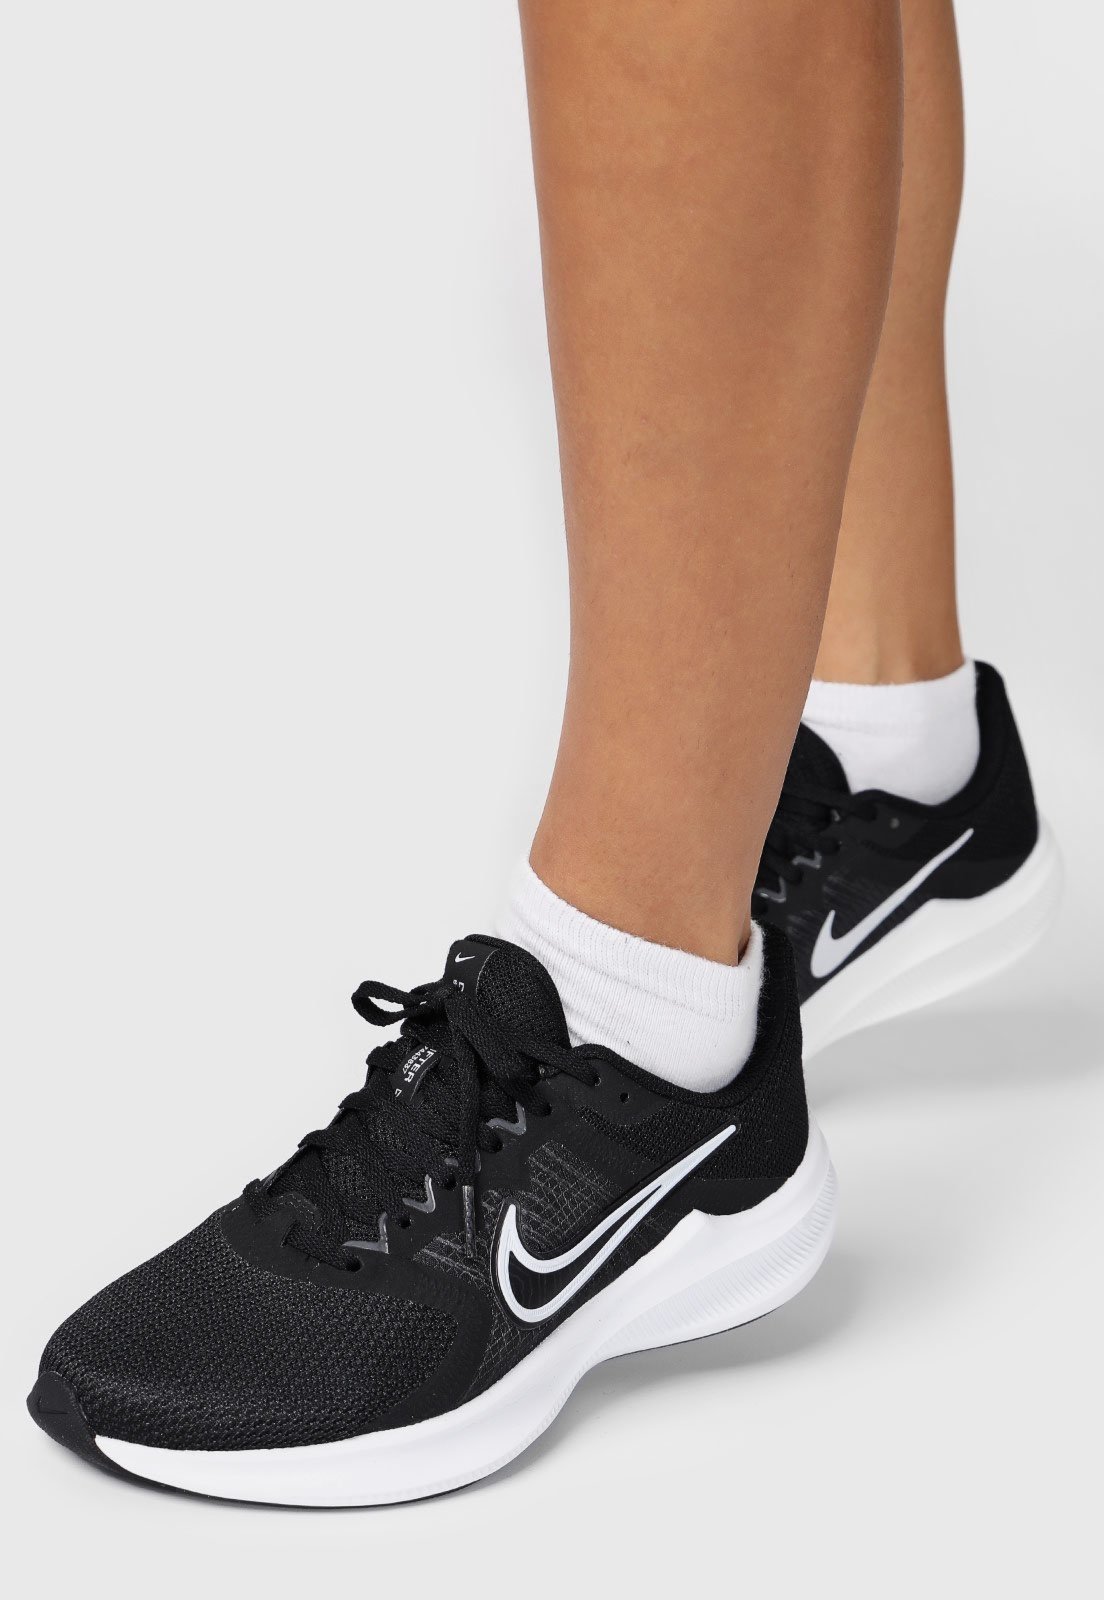 Nike: Tênis, roupas e mais com os melhores preços é na Dafiti